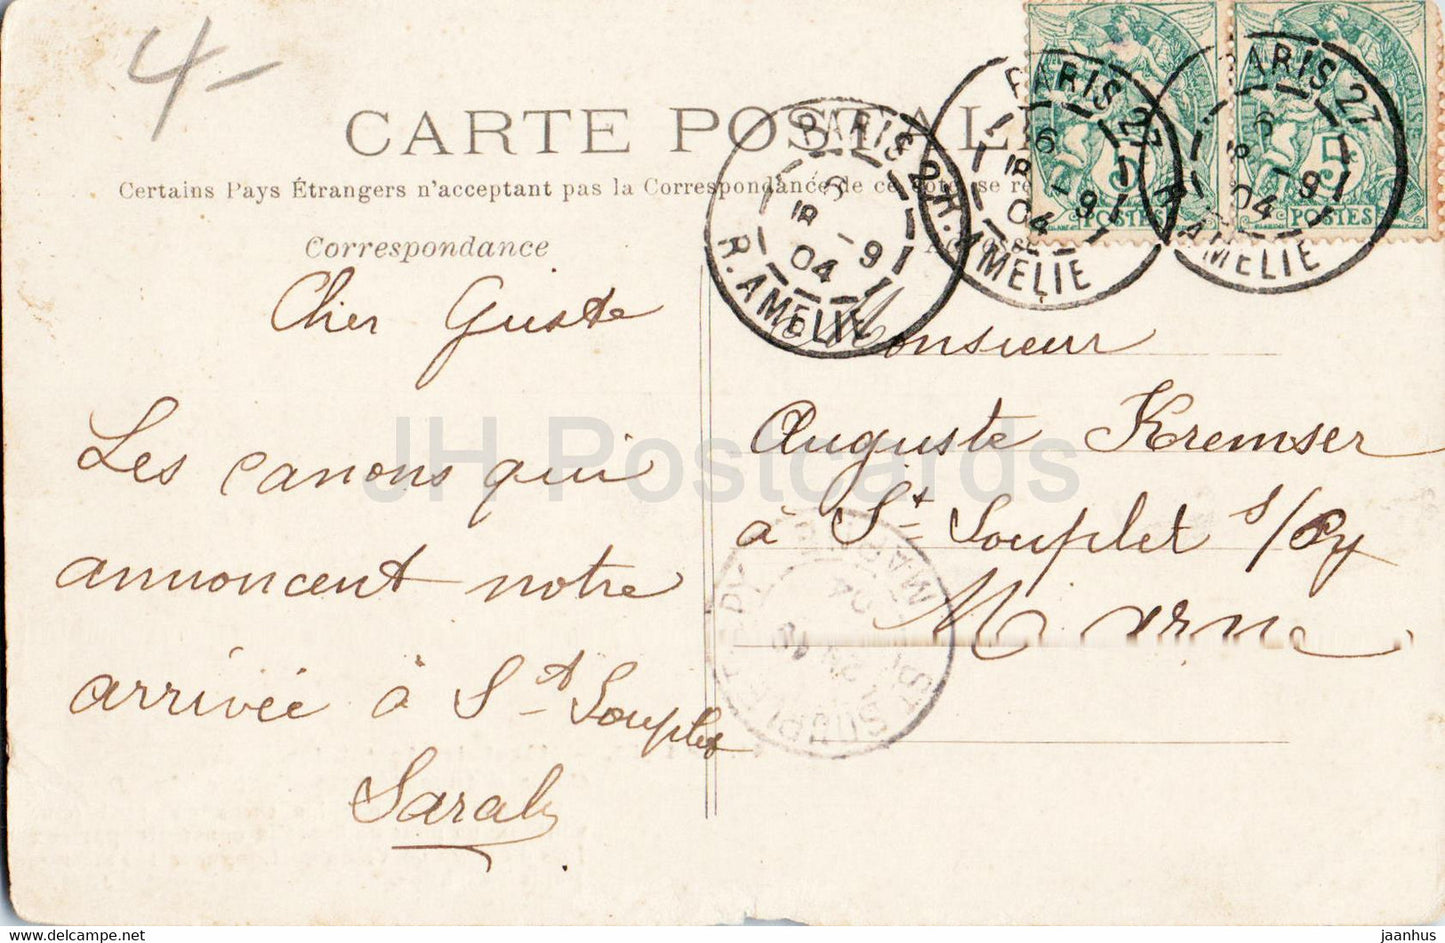 Paris - Hotel des Invalides - Kanone - Militär - 41 - alte Postkarte - 1904 - Frankreich - gebraucht